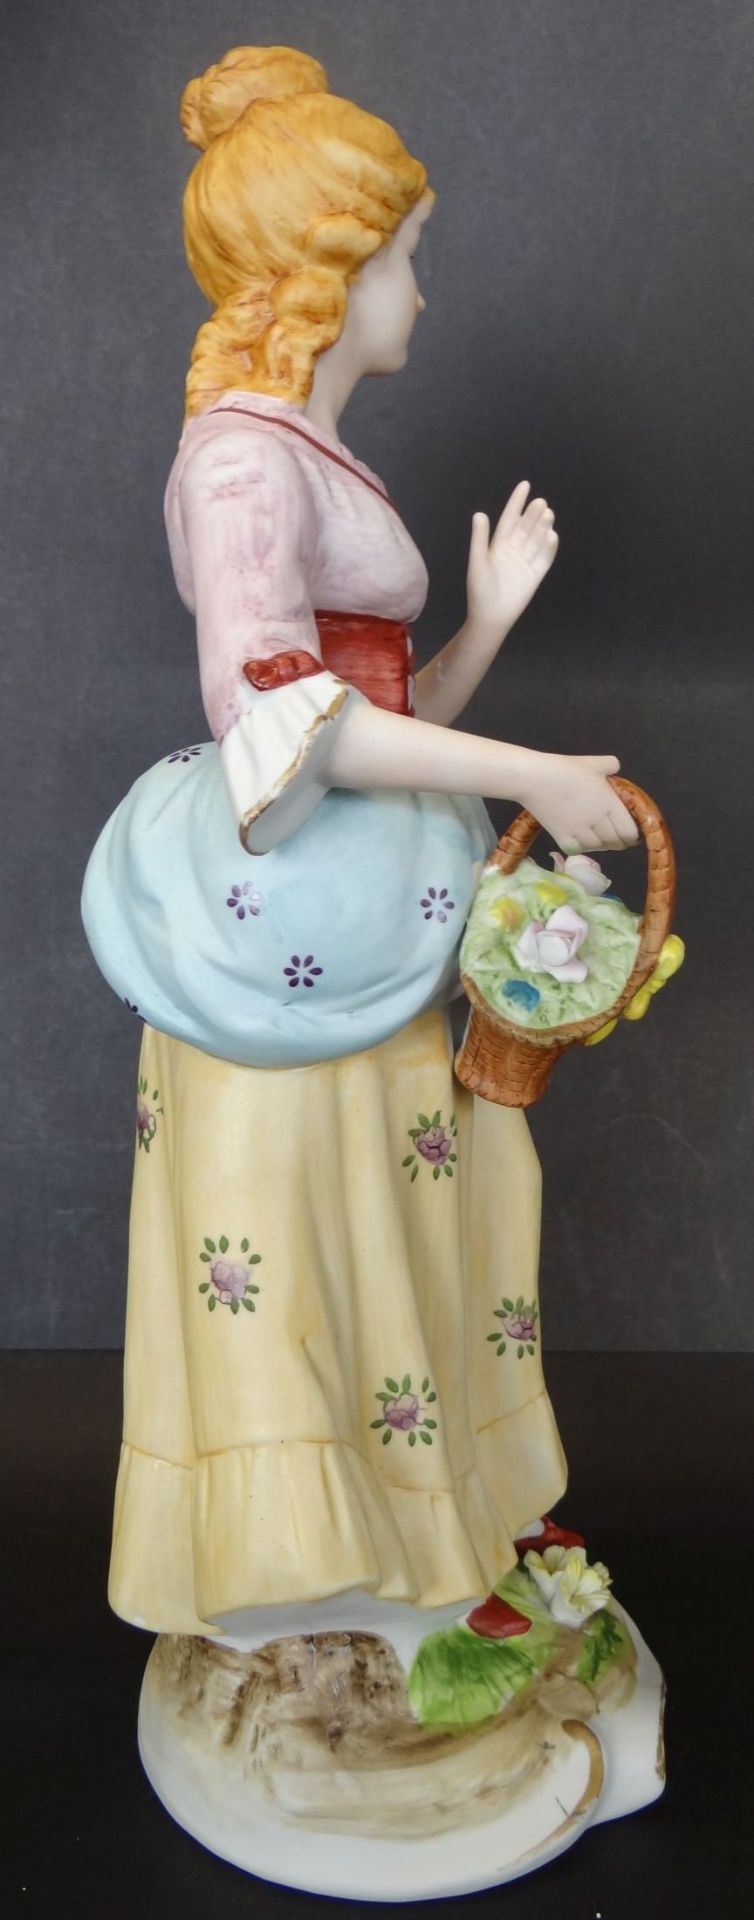 hohe Bisquitporzellan-Figur "Mädchen mit Blumenkorb", ein Daumen beschädigt, linke Hand geklebt, H- - Bild 3 aus 7